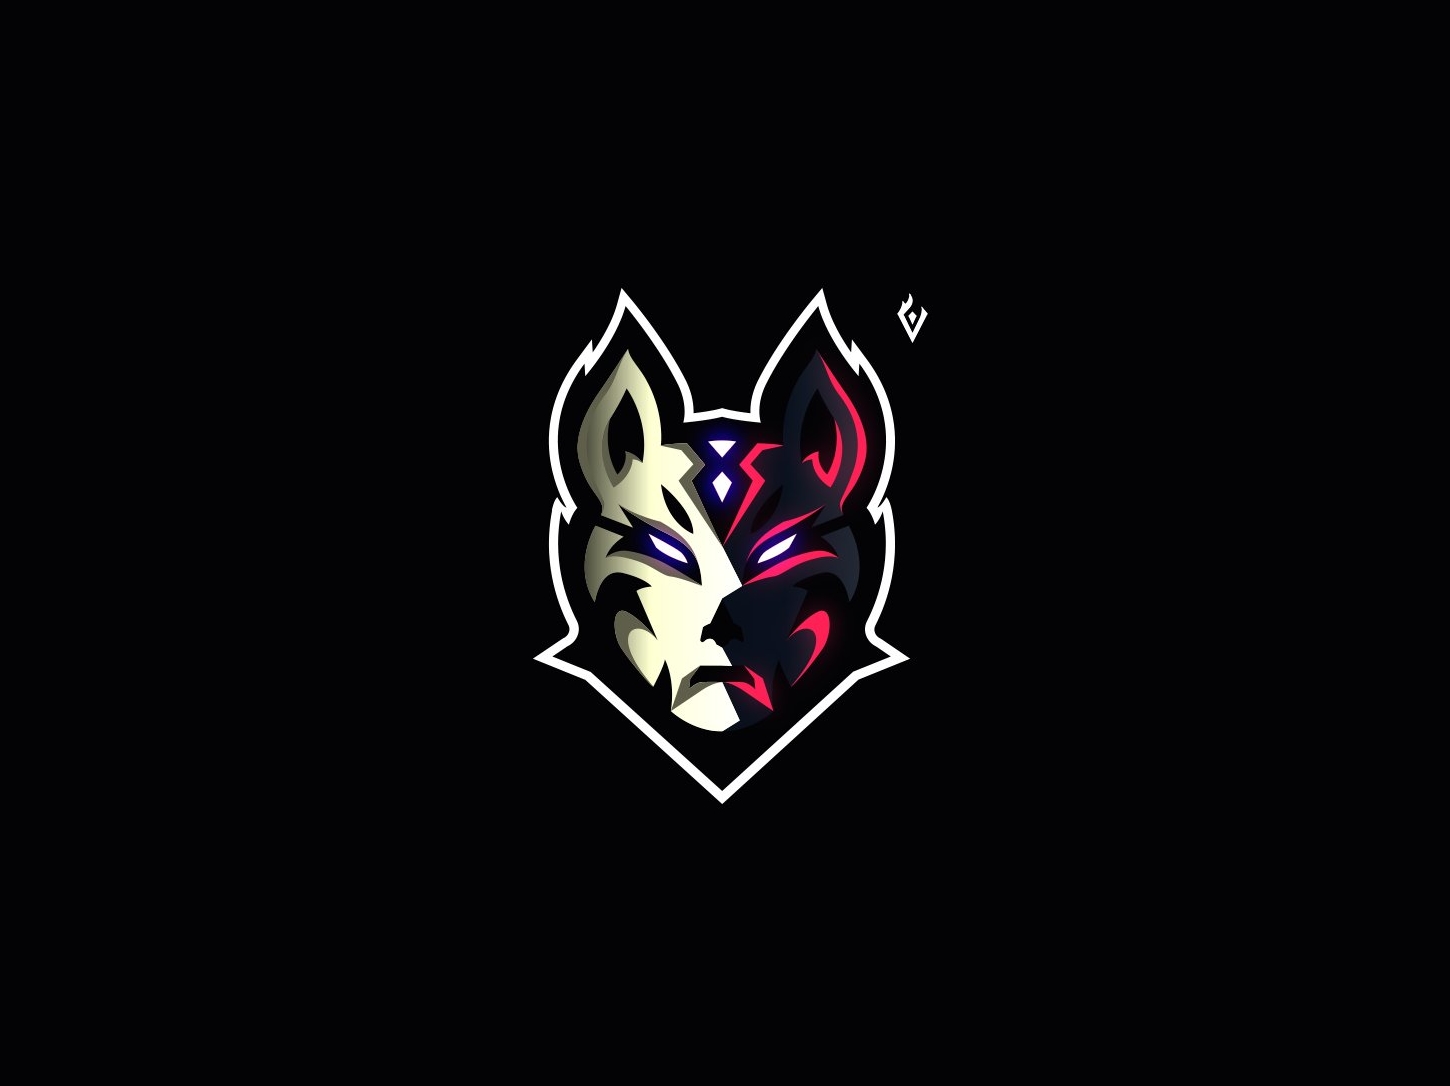 kitsune mascot logo identity brand and identity branding brand gaming logo esports logo - esports fortnite logo